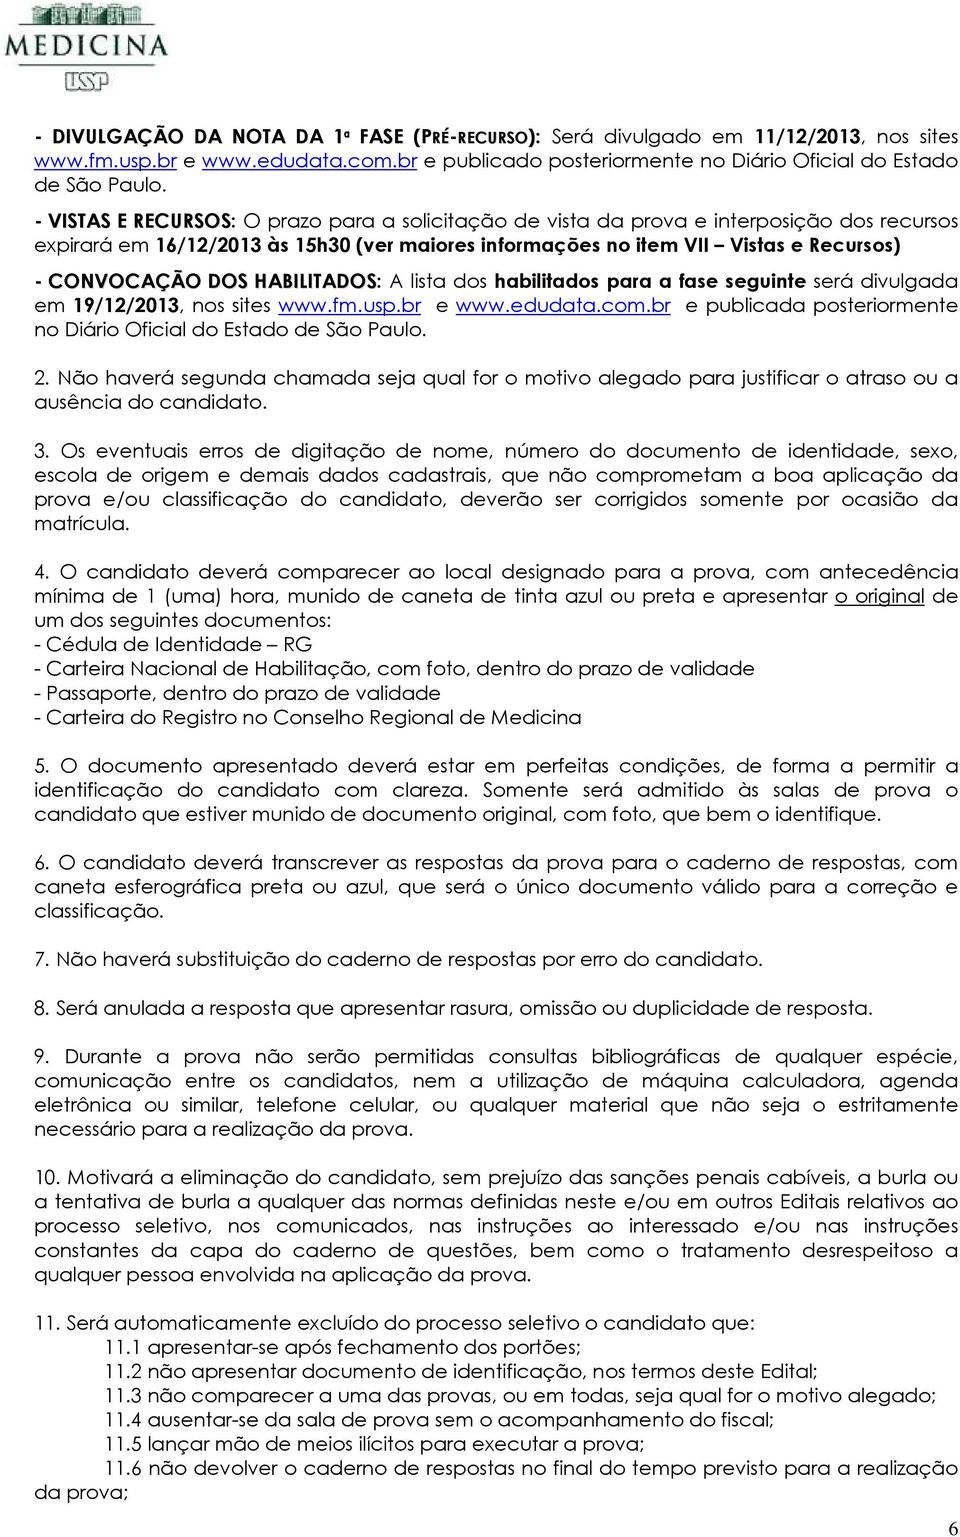 HABILITADOS: A lista dos habilitados para a fase seguinte será divulgada em 19/12/2013, nos sites www.fm.usp.br e www.edudata.com.